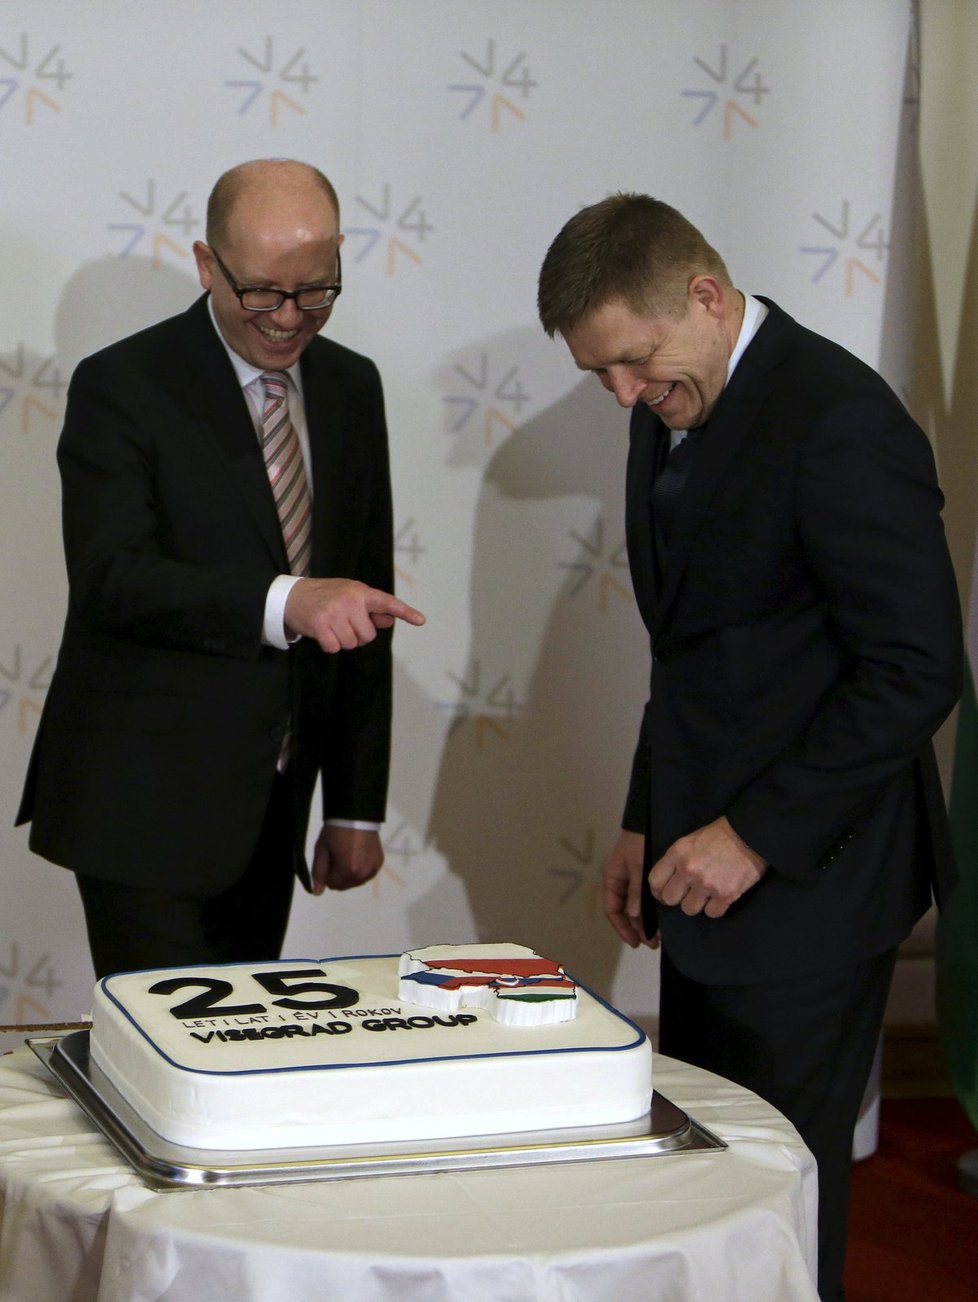 Setkání V4 v Praze: Sobotka s Ficem u dortu k 25. výročí založení visegrádské čtyřky